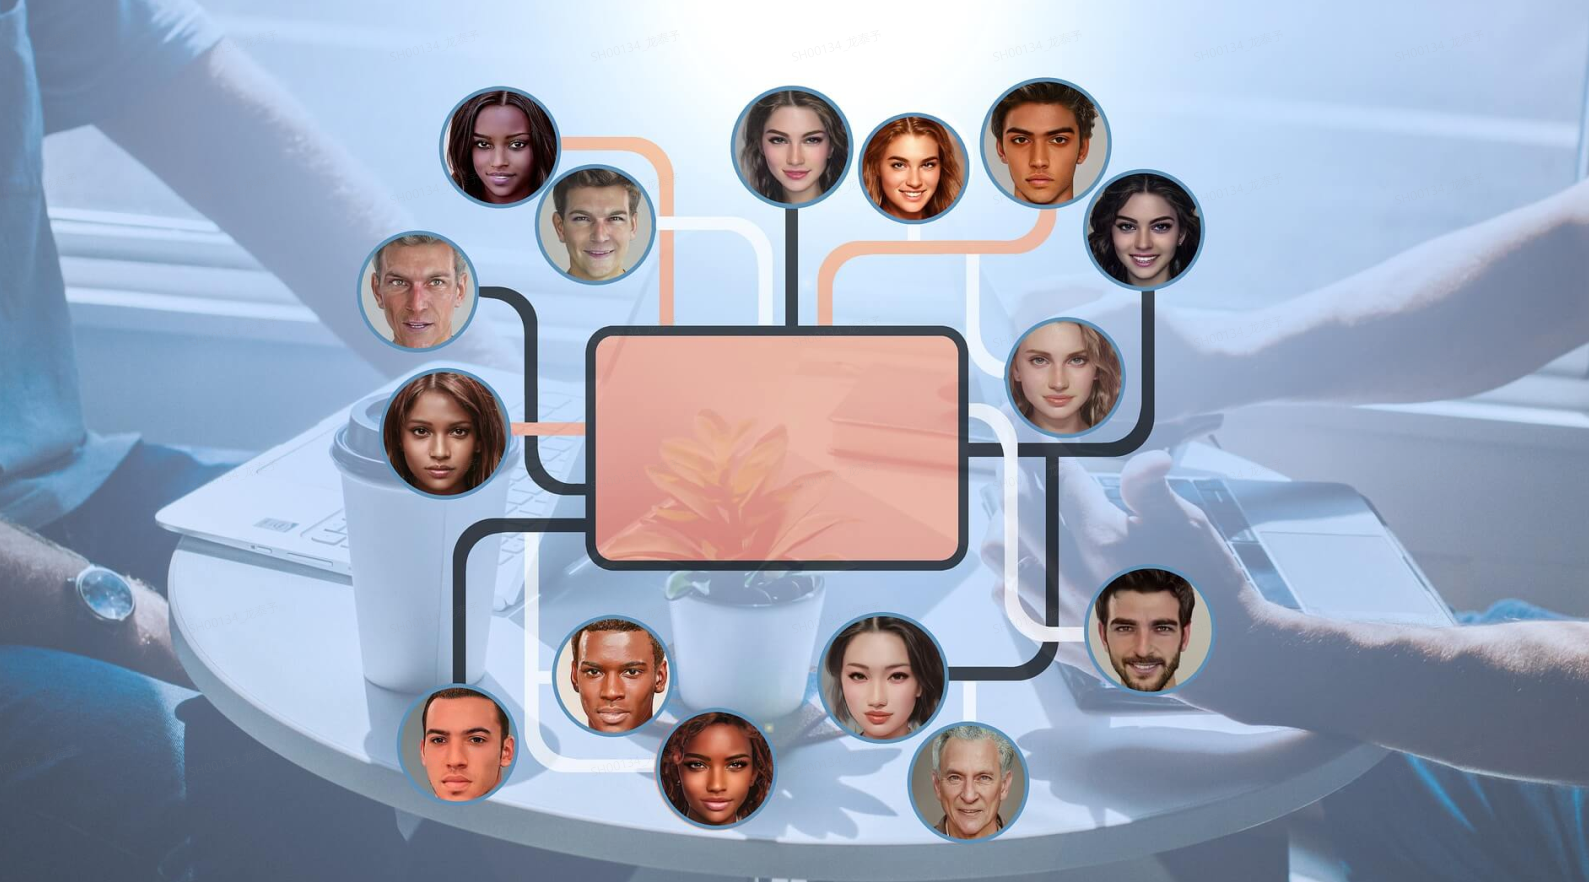 图片展示了多个不同肤色和年龄的人物头像，围绕着中央的屏幕排列，形成类似家谱或社交网络的视觉效果。